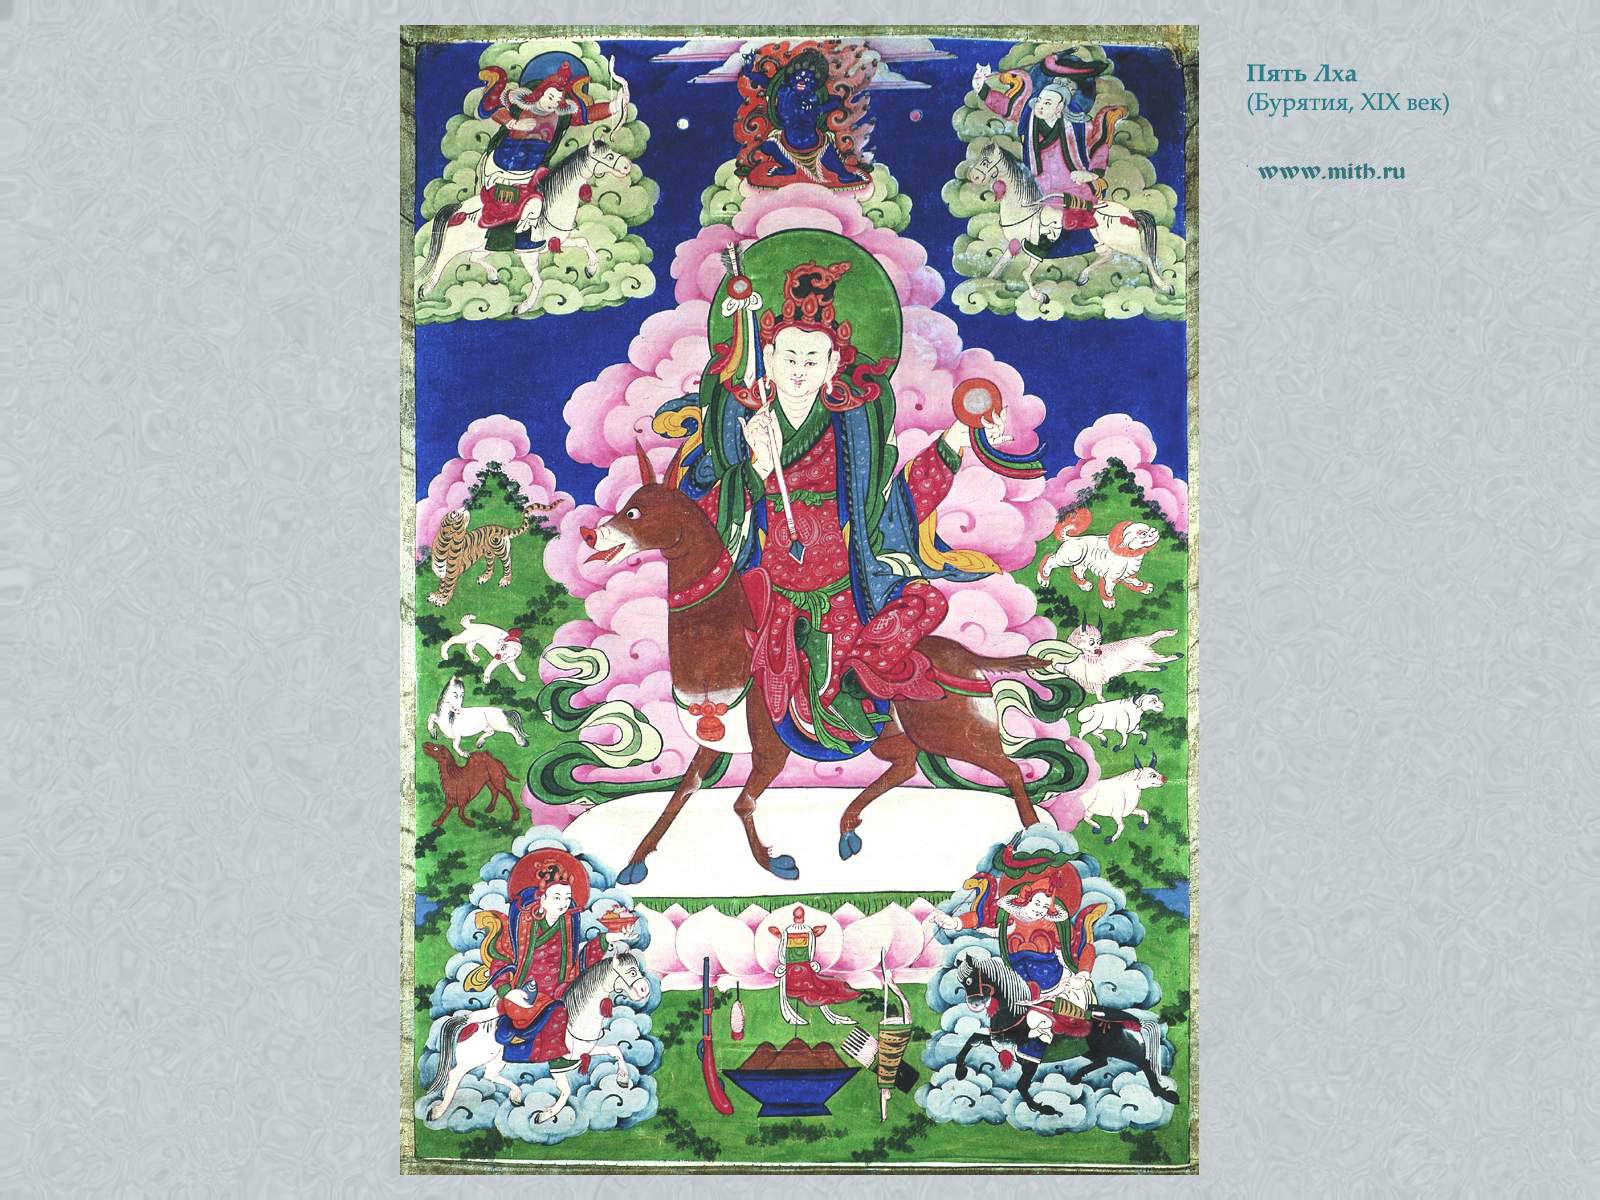 Пять Лха

перейти к книге 'Тибетская живопись'